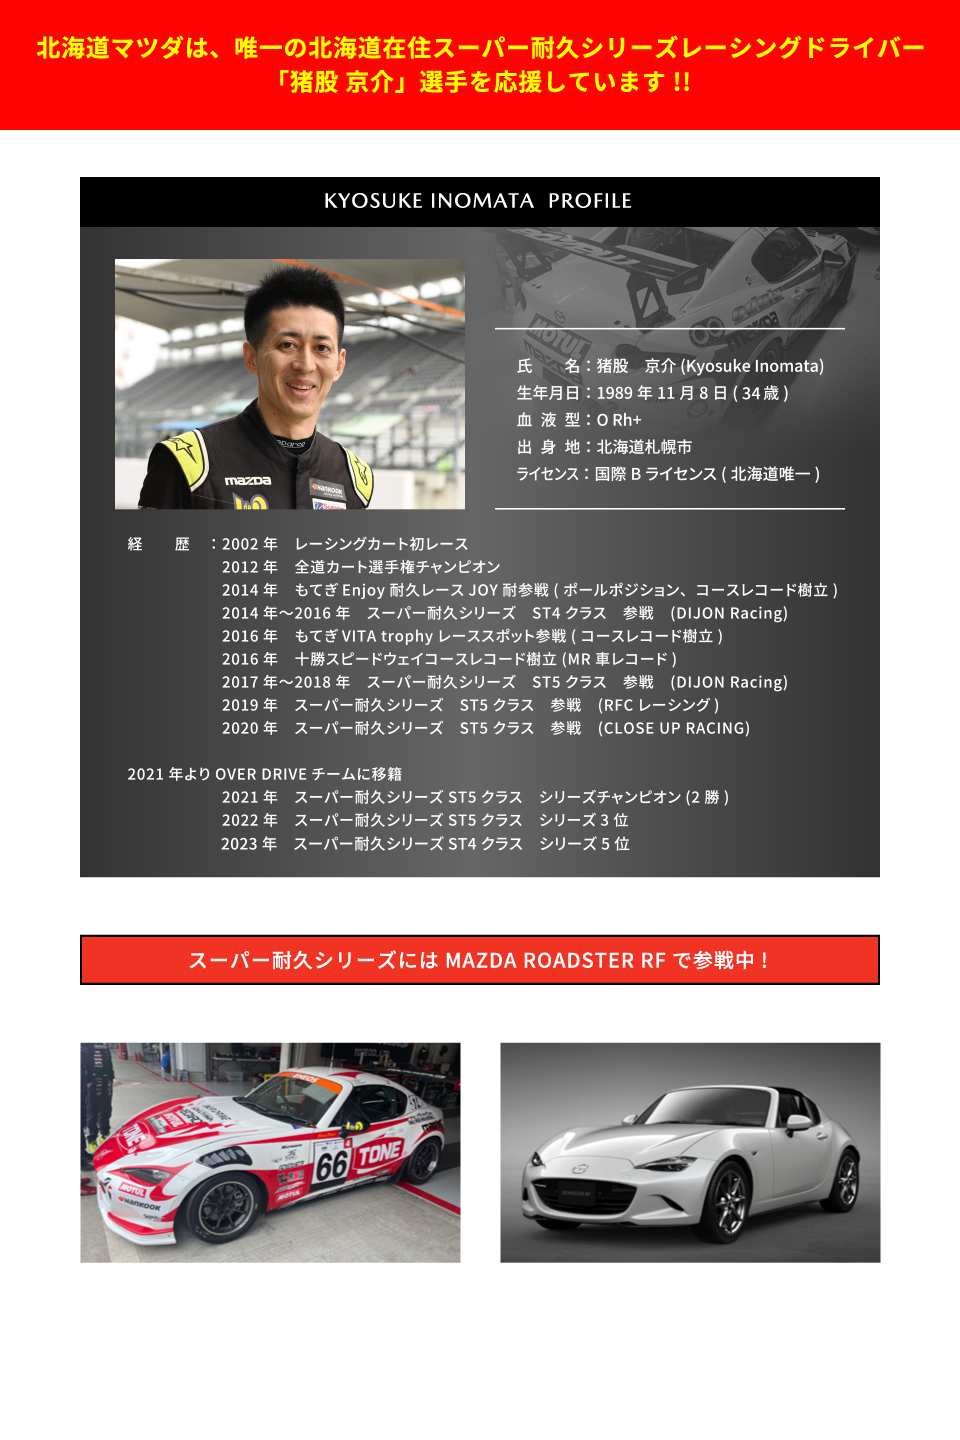 北海道マツダは、唯一の北海道在住スーパー耐久シリーズレーシングドライバー「猪俣京介」選手を応援しています。スーパー耐久シリーズには、MAZDA ROADSTER RFで参戦中。